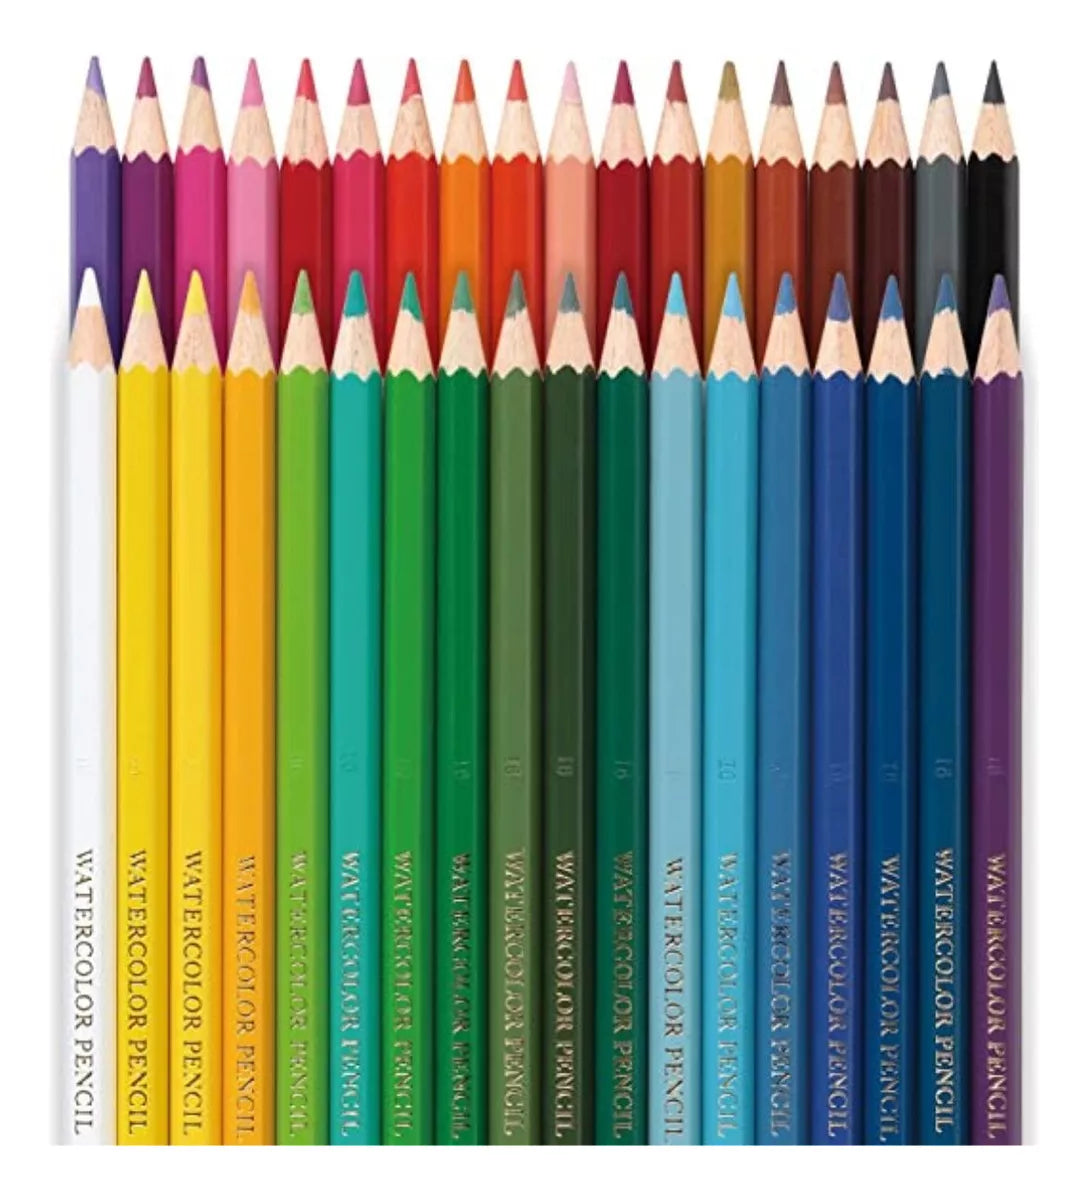 36 Lapiz Color Acuarelable Pentel Arts Profesionales Arte